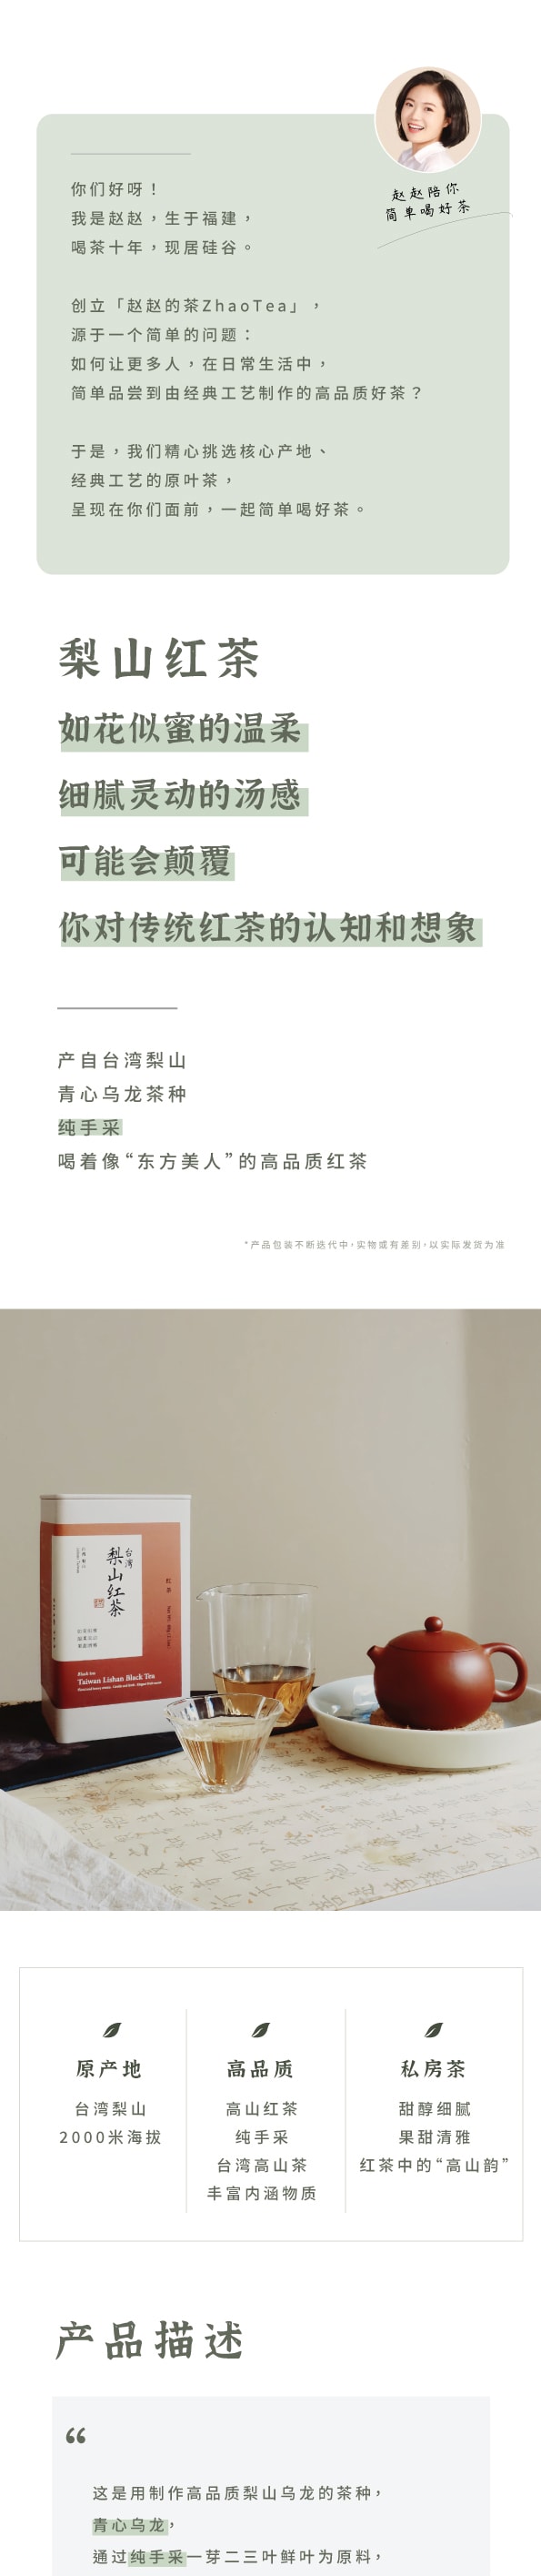 ZhaoTea 梨山红茶 台湾高等级高山红茶 花果蜜香 甘甜细腻 茶叶 红茶60g